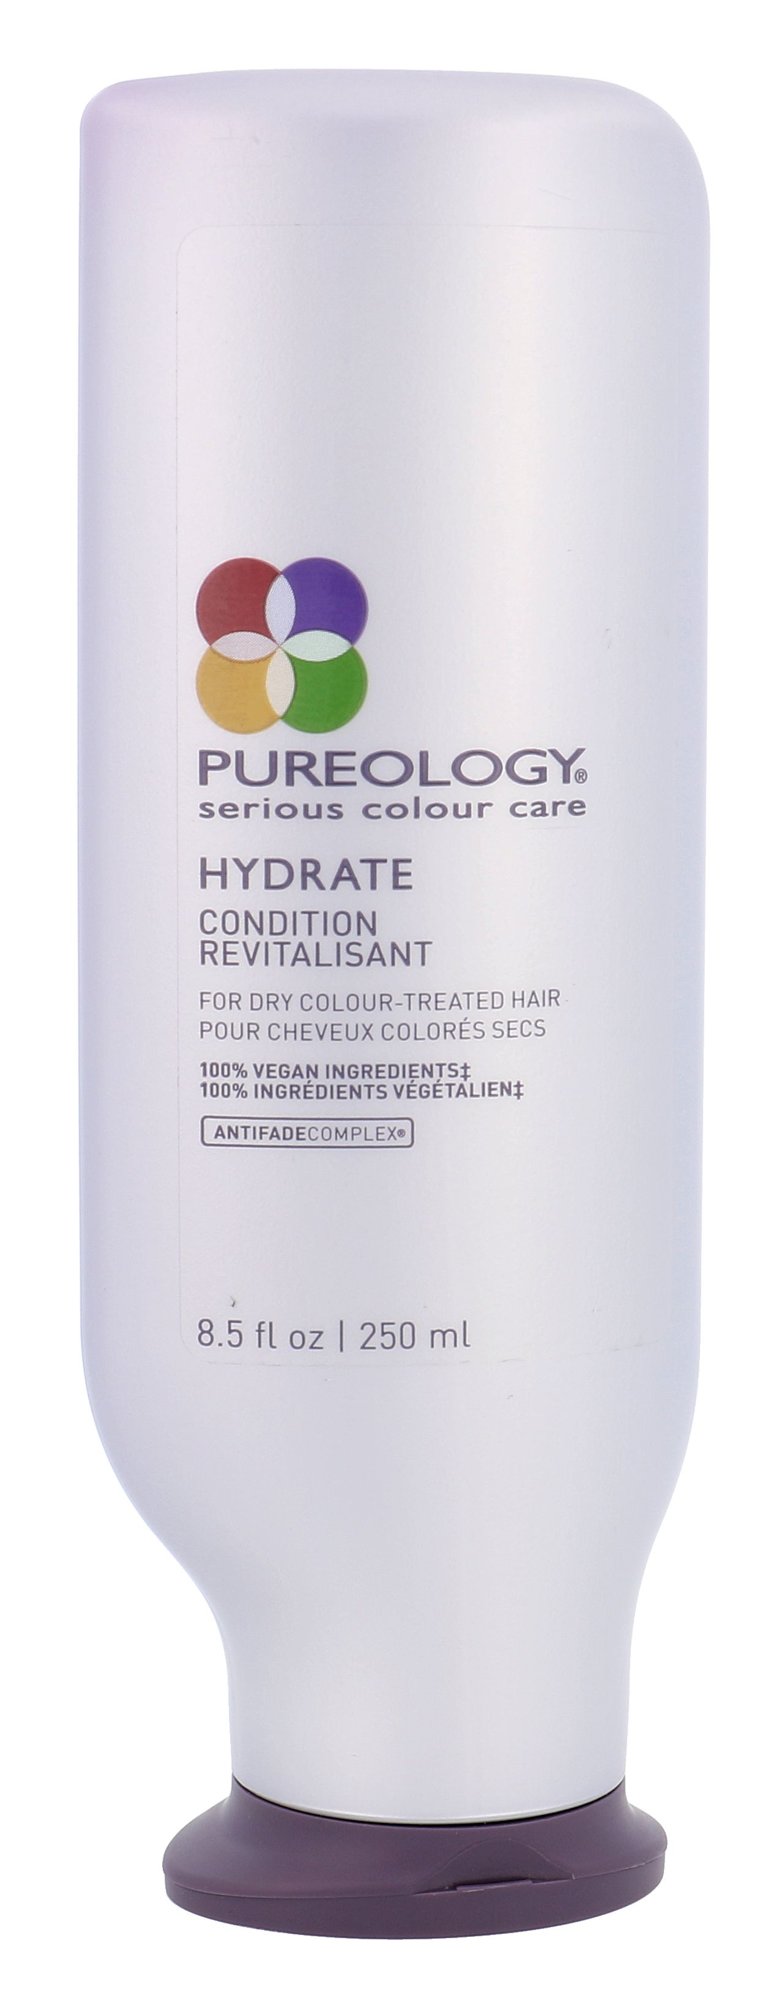 Redken Pureology Hydrate kondicionierius